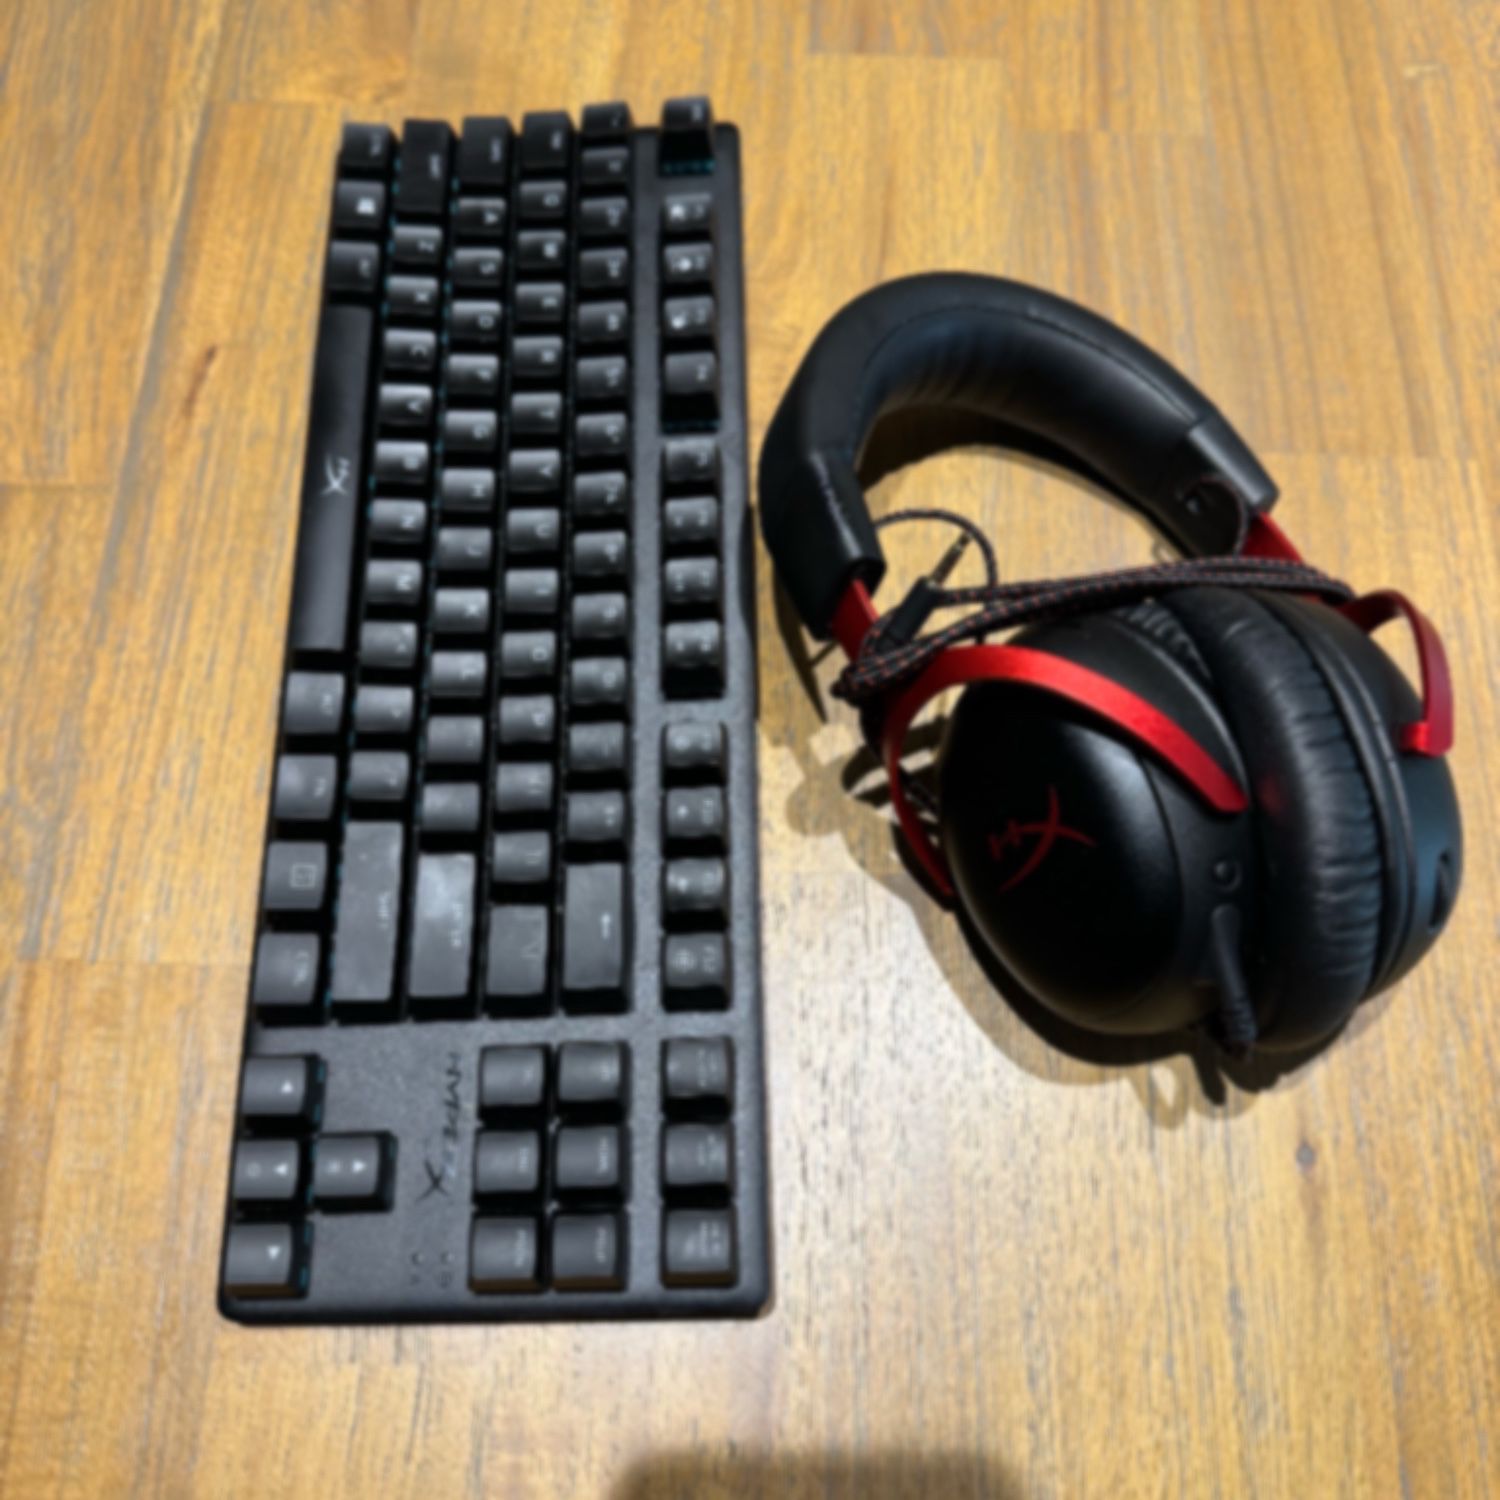 HyperX gaming keyboard headset bundle